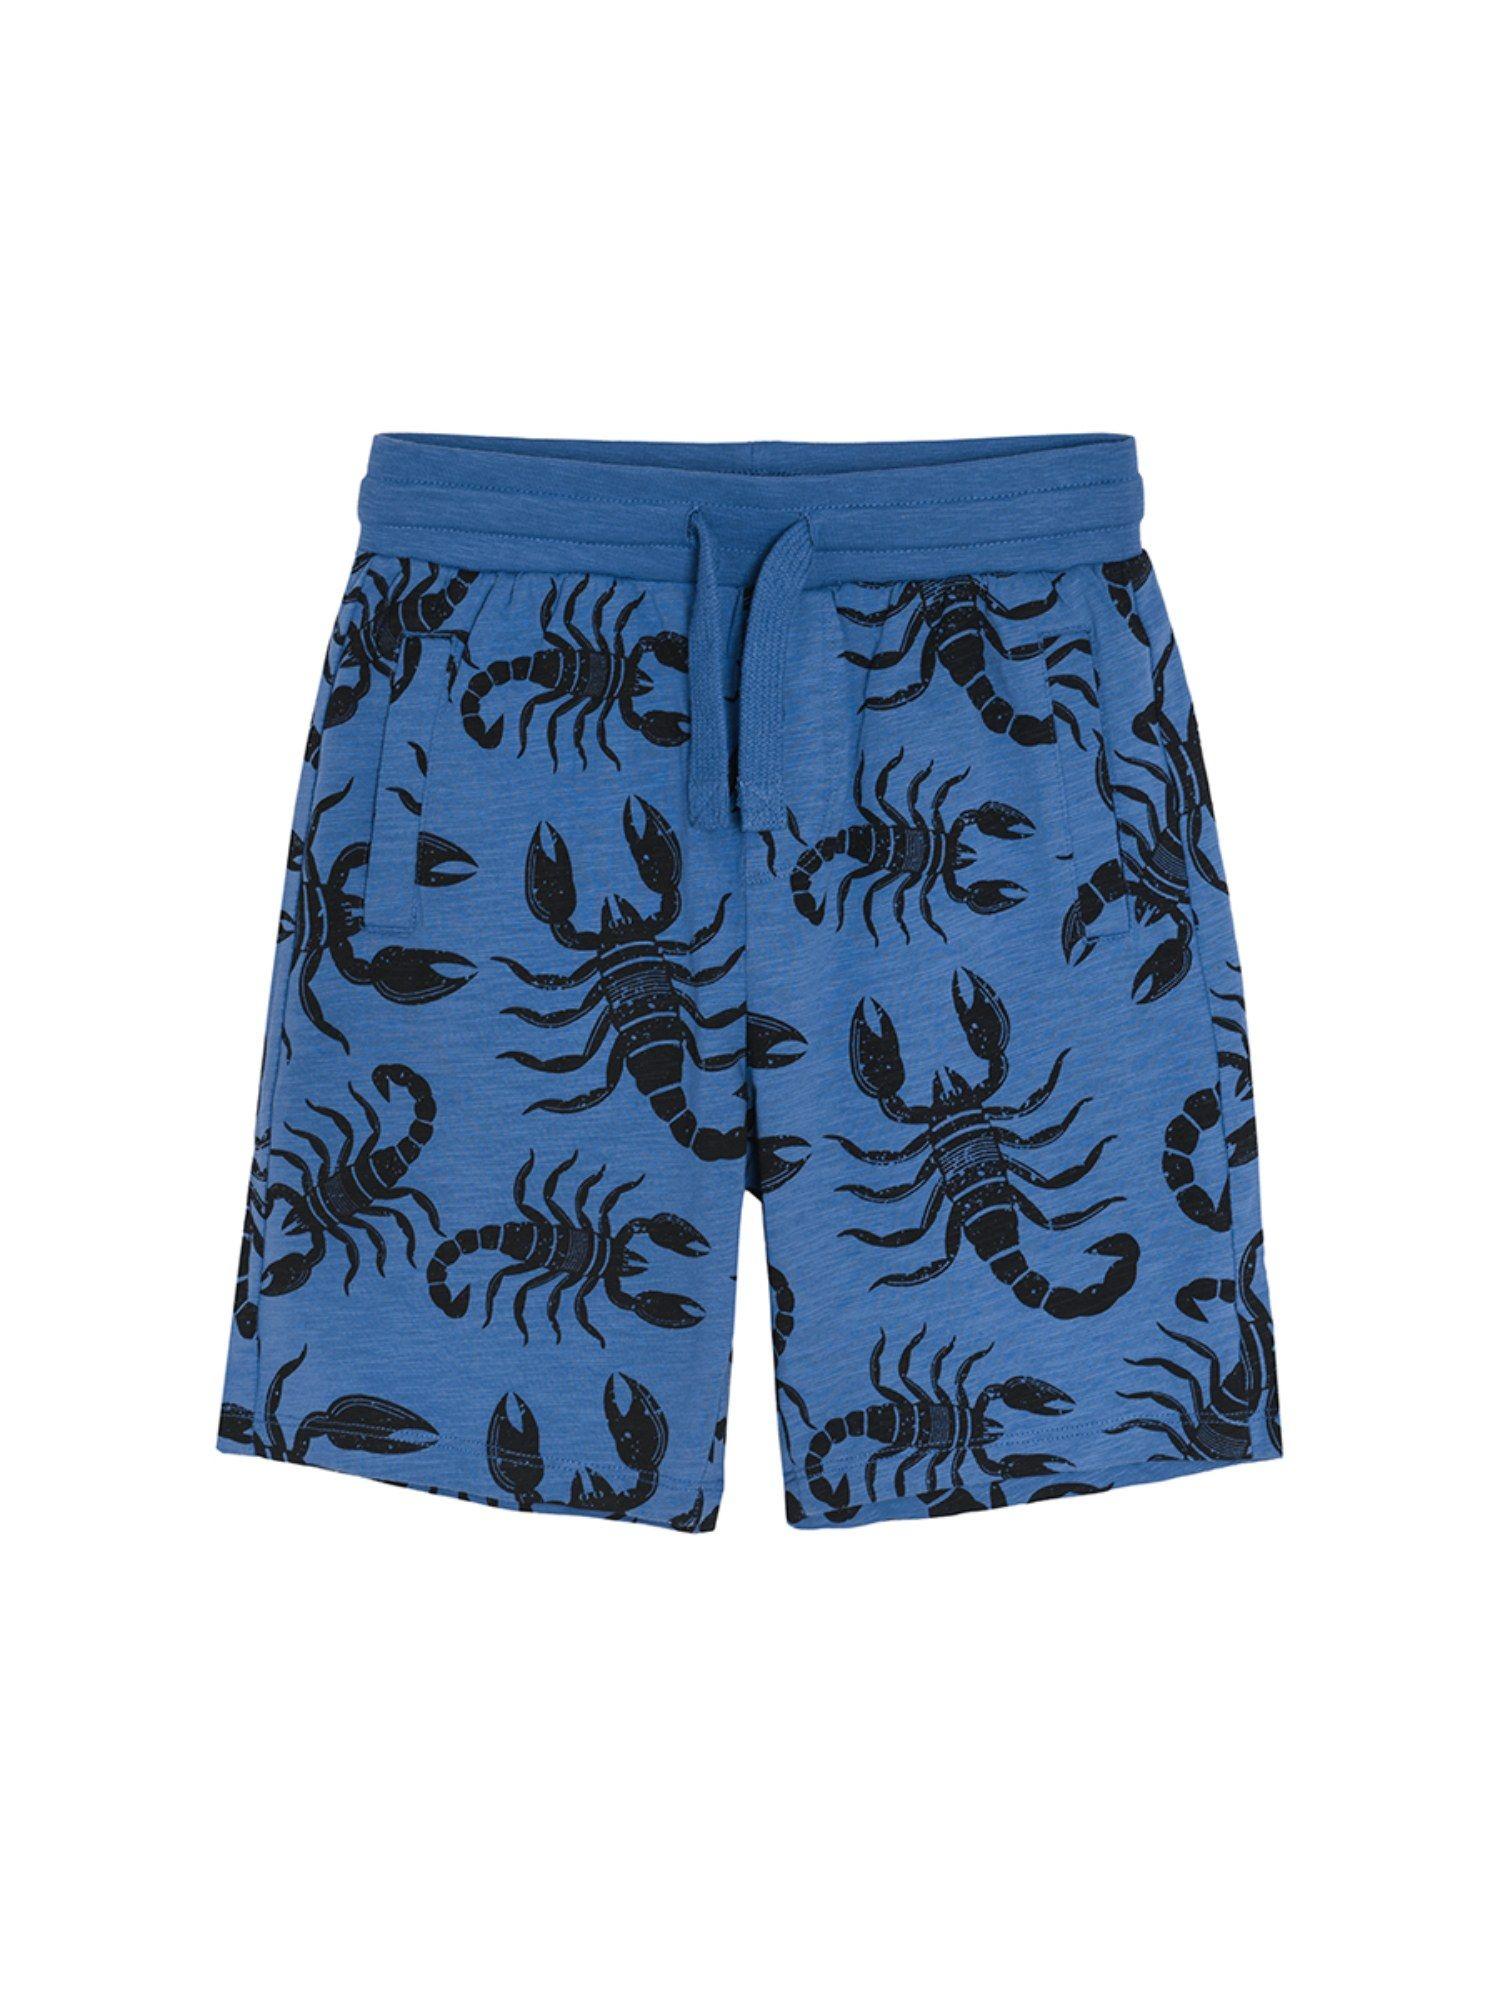 smyk boys navy blue printed shorts